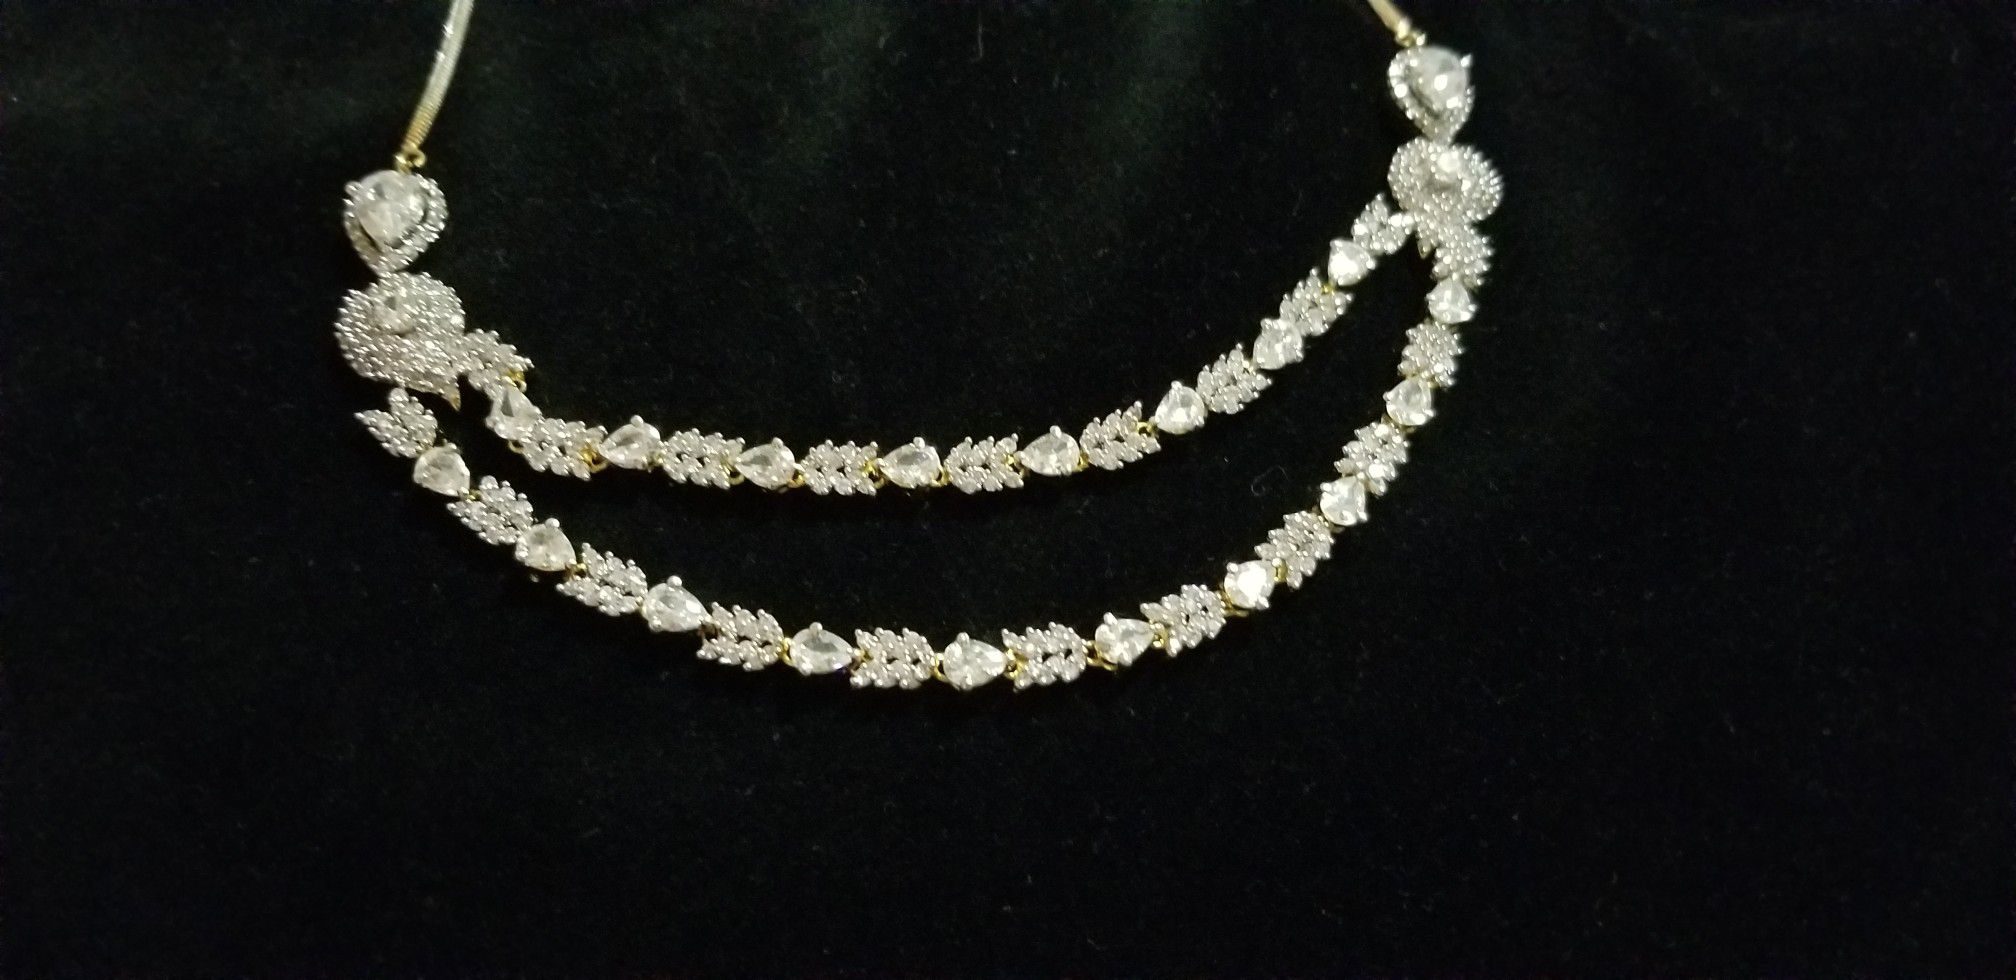 zarconia necklace, new